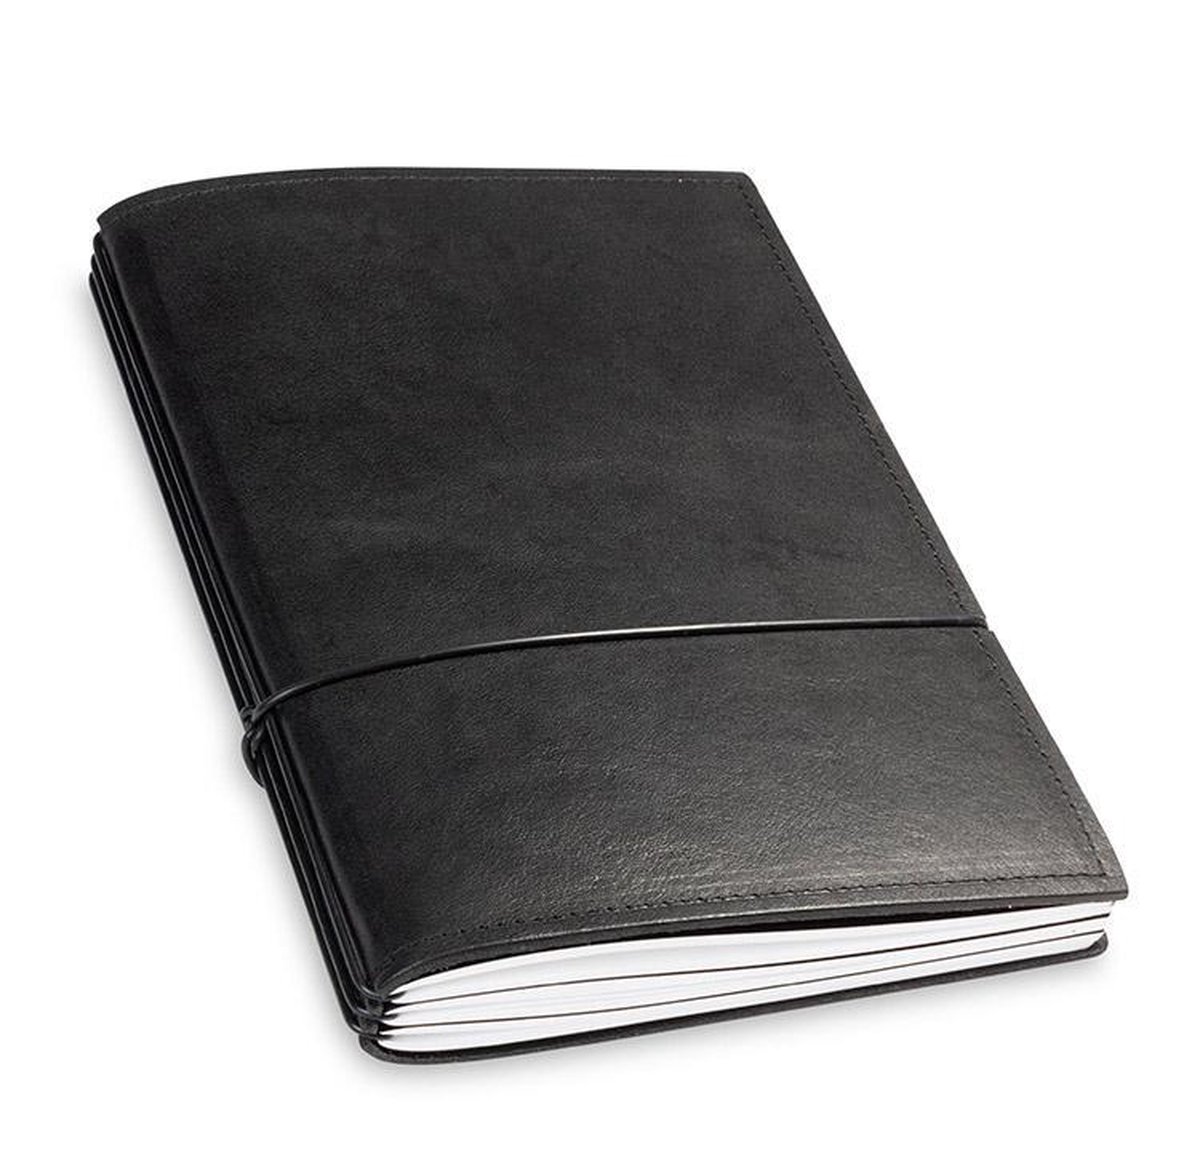 X17 Notebook A5 Leder Natur Zwart - 3 katernen